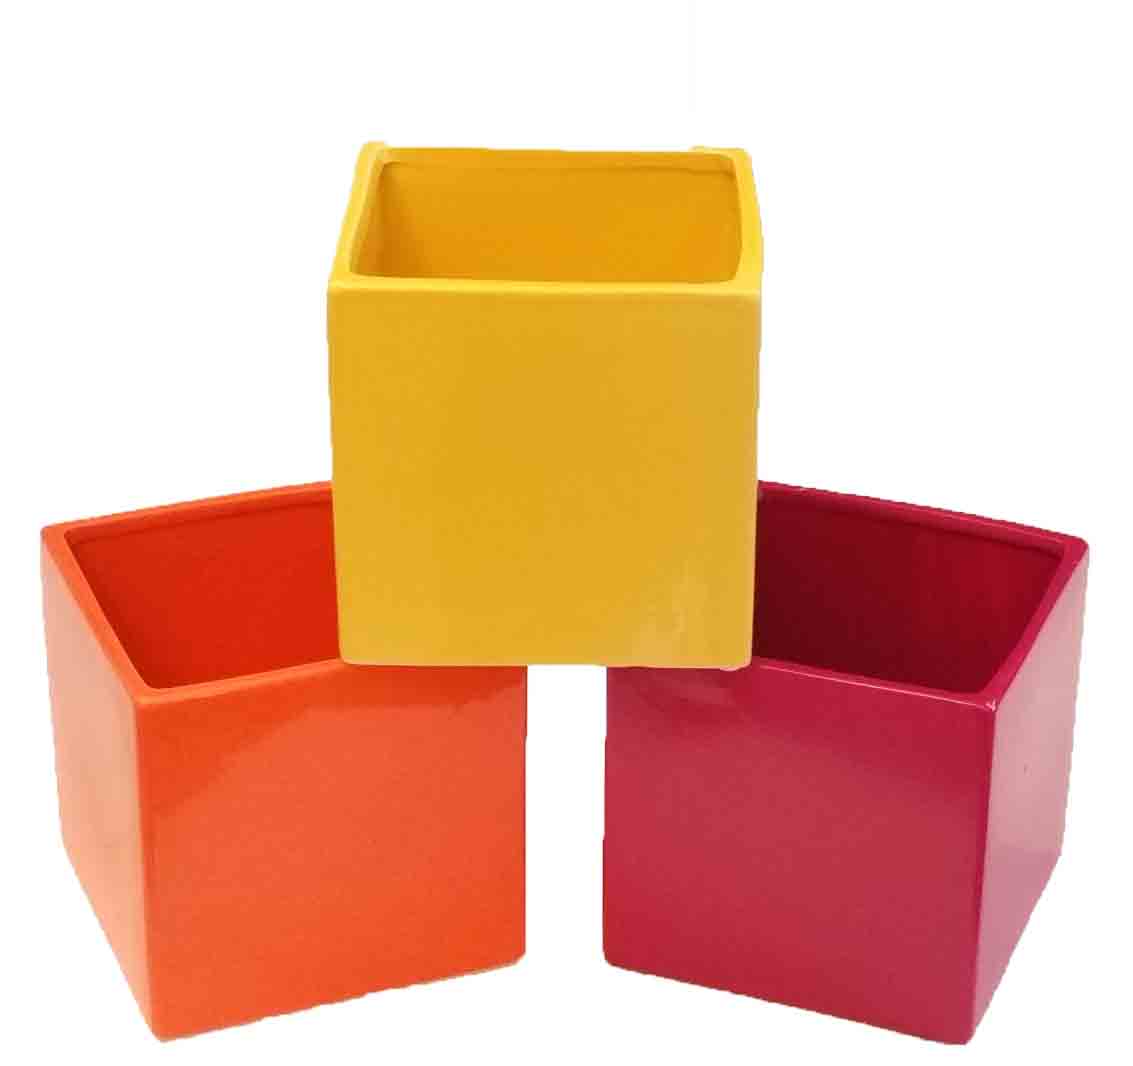 C555 - 5" Ceramic Cube - 7.50 ea, 7.25/6